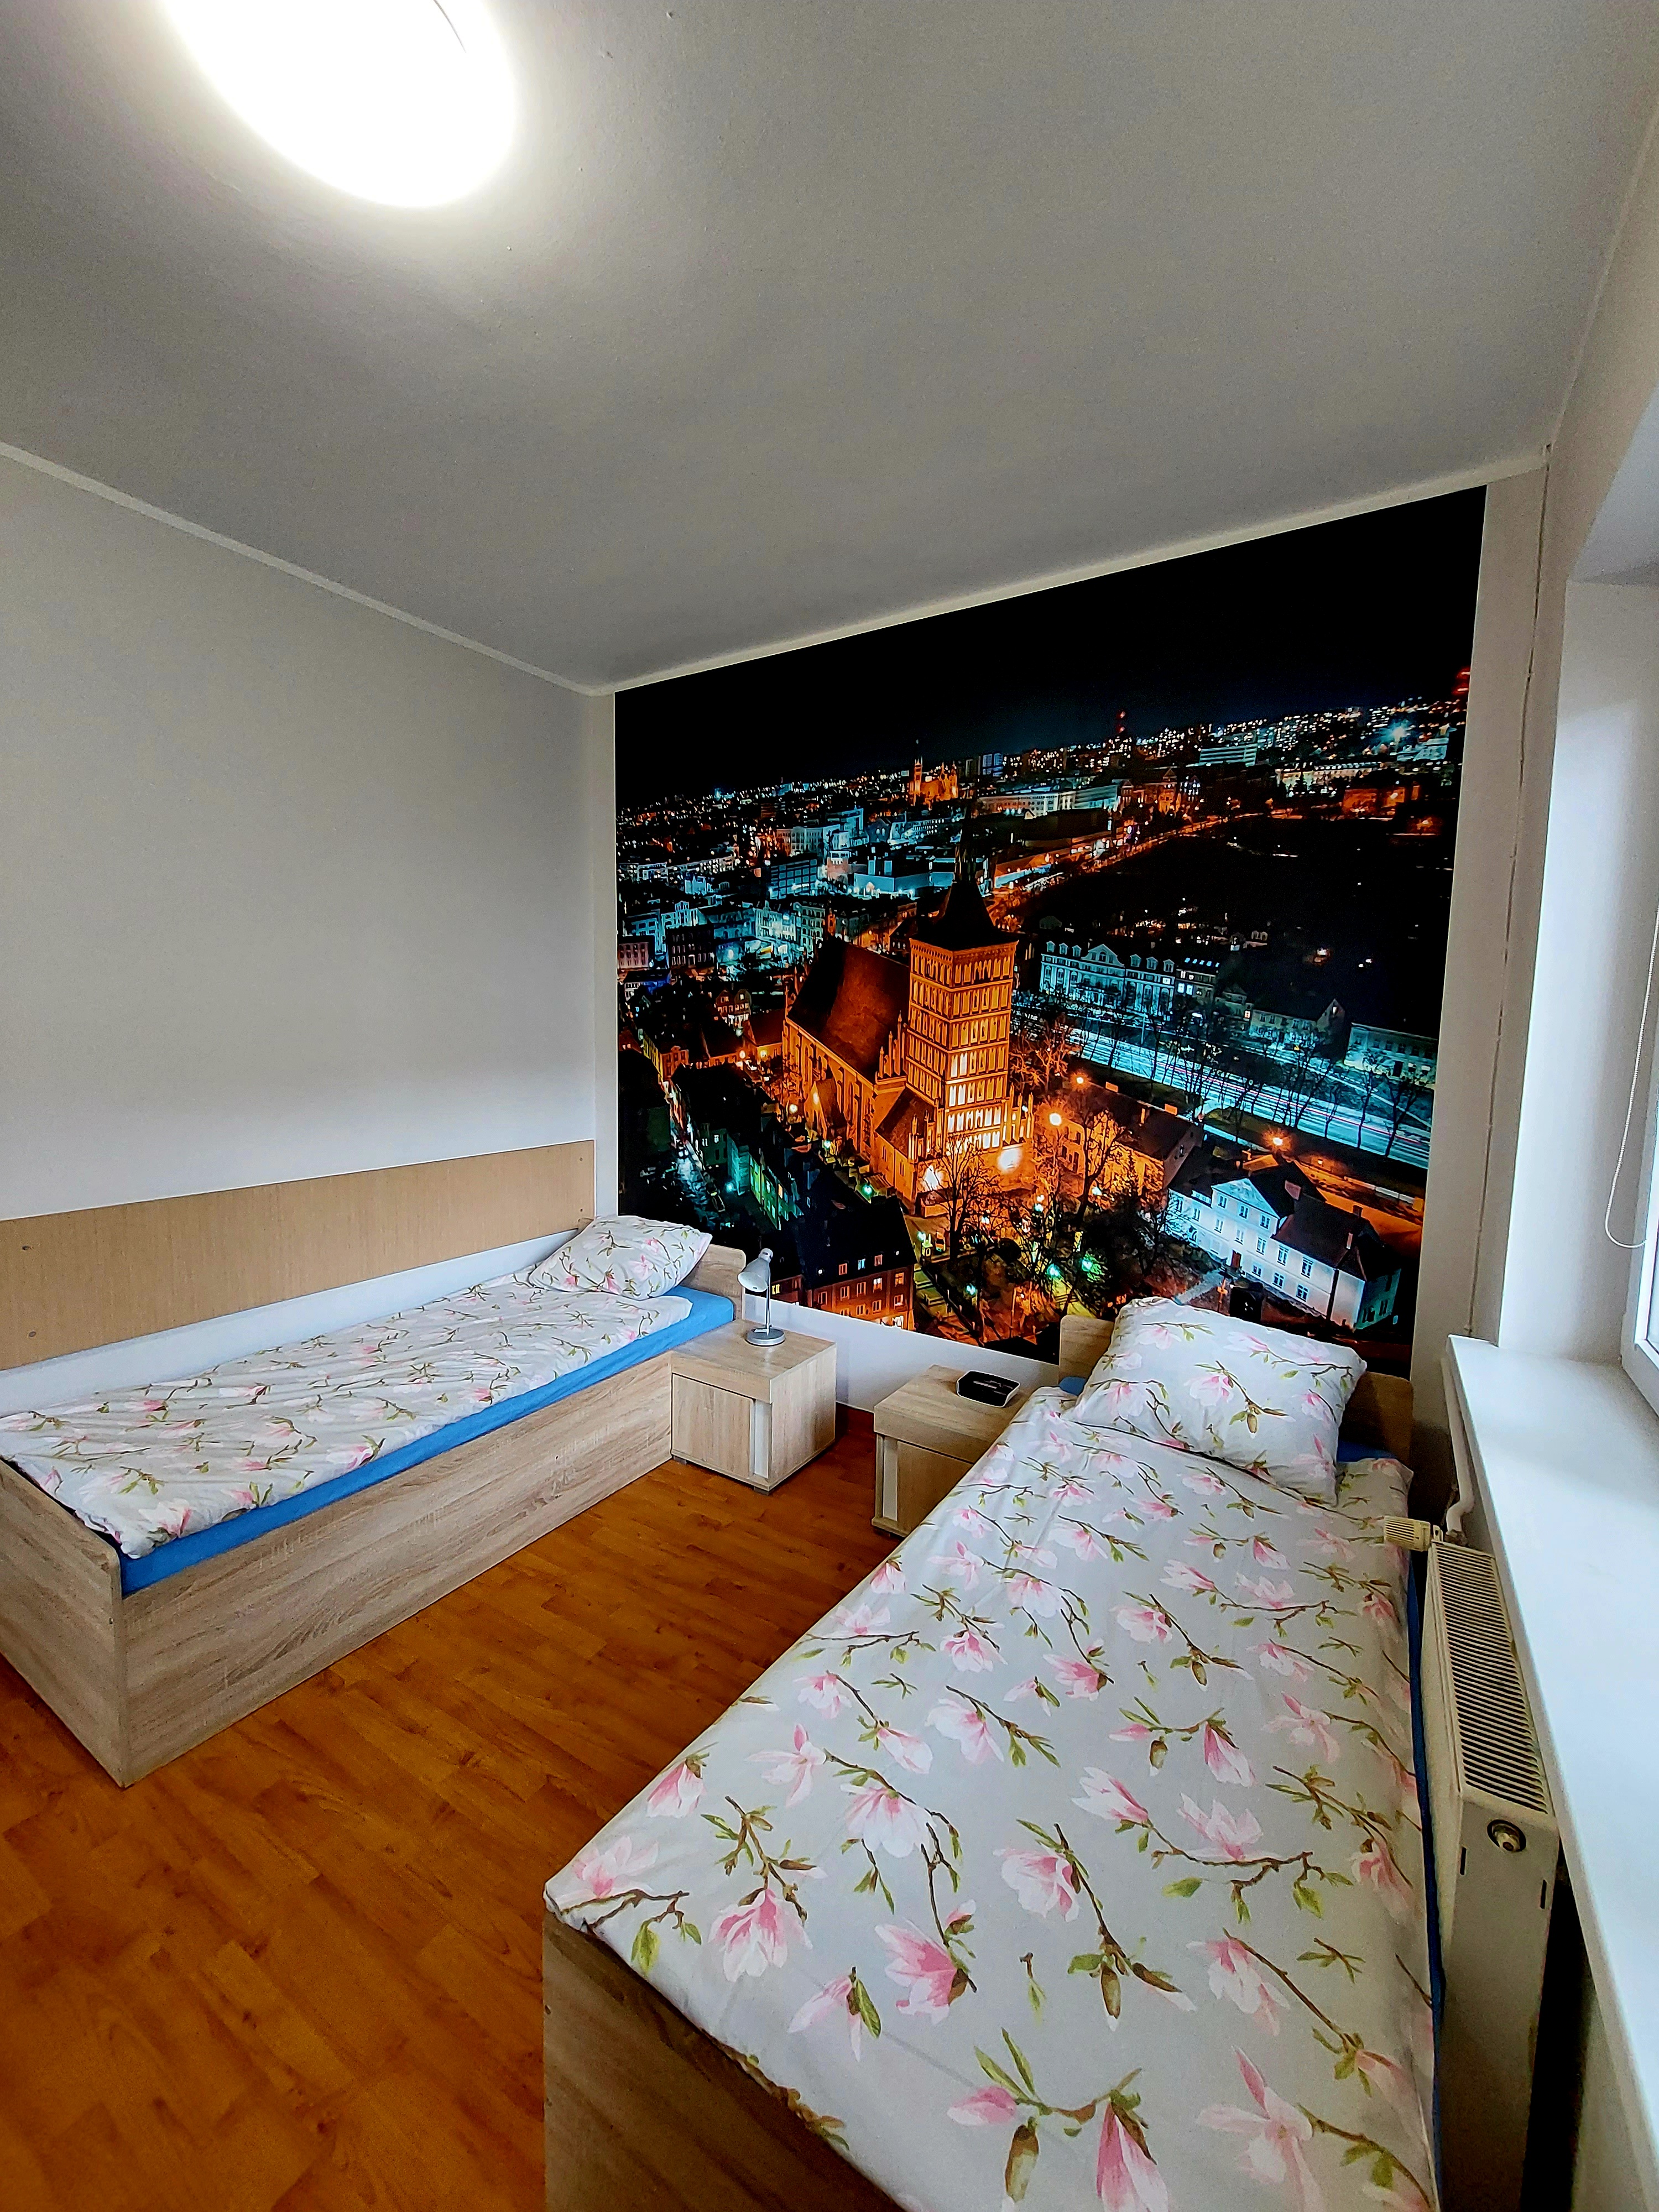 Ein Zweibettzimmer mit Bad im Objekt Nr. 1 Kosciuszko. Die Tapete im Hintergrund an der Wand zeigt Olsztyn aus der Vogelperspektive.  